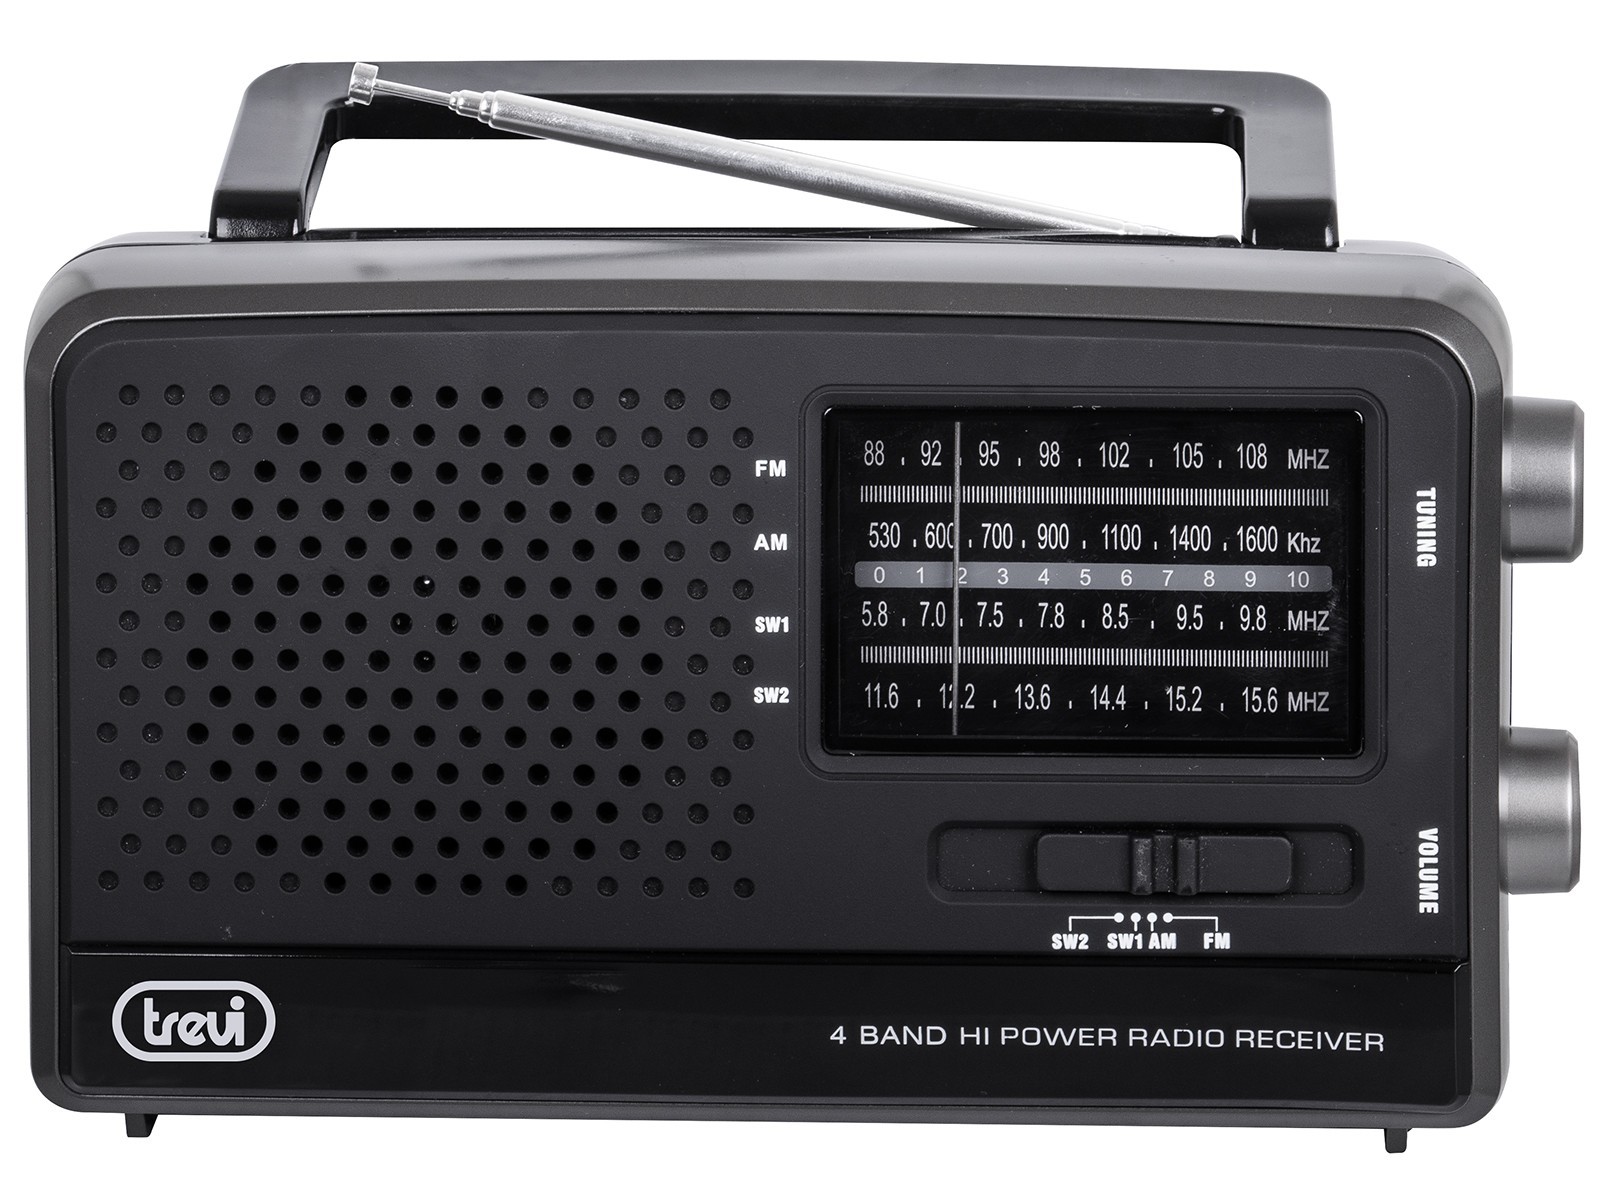 Trevi MB 746 W Világvevő rádió, fekete színben